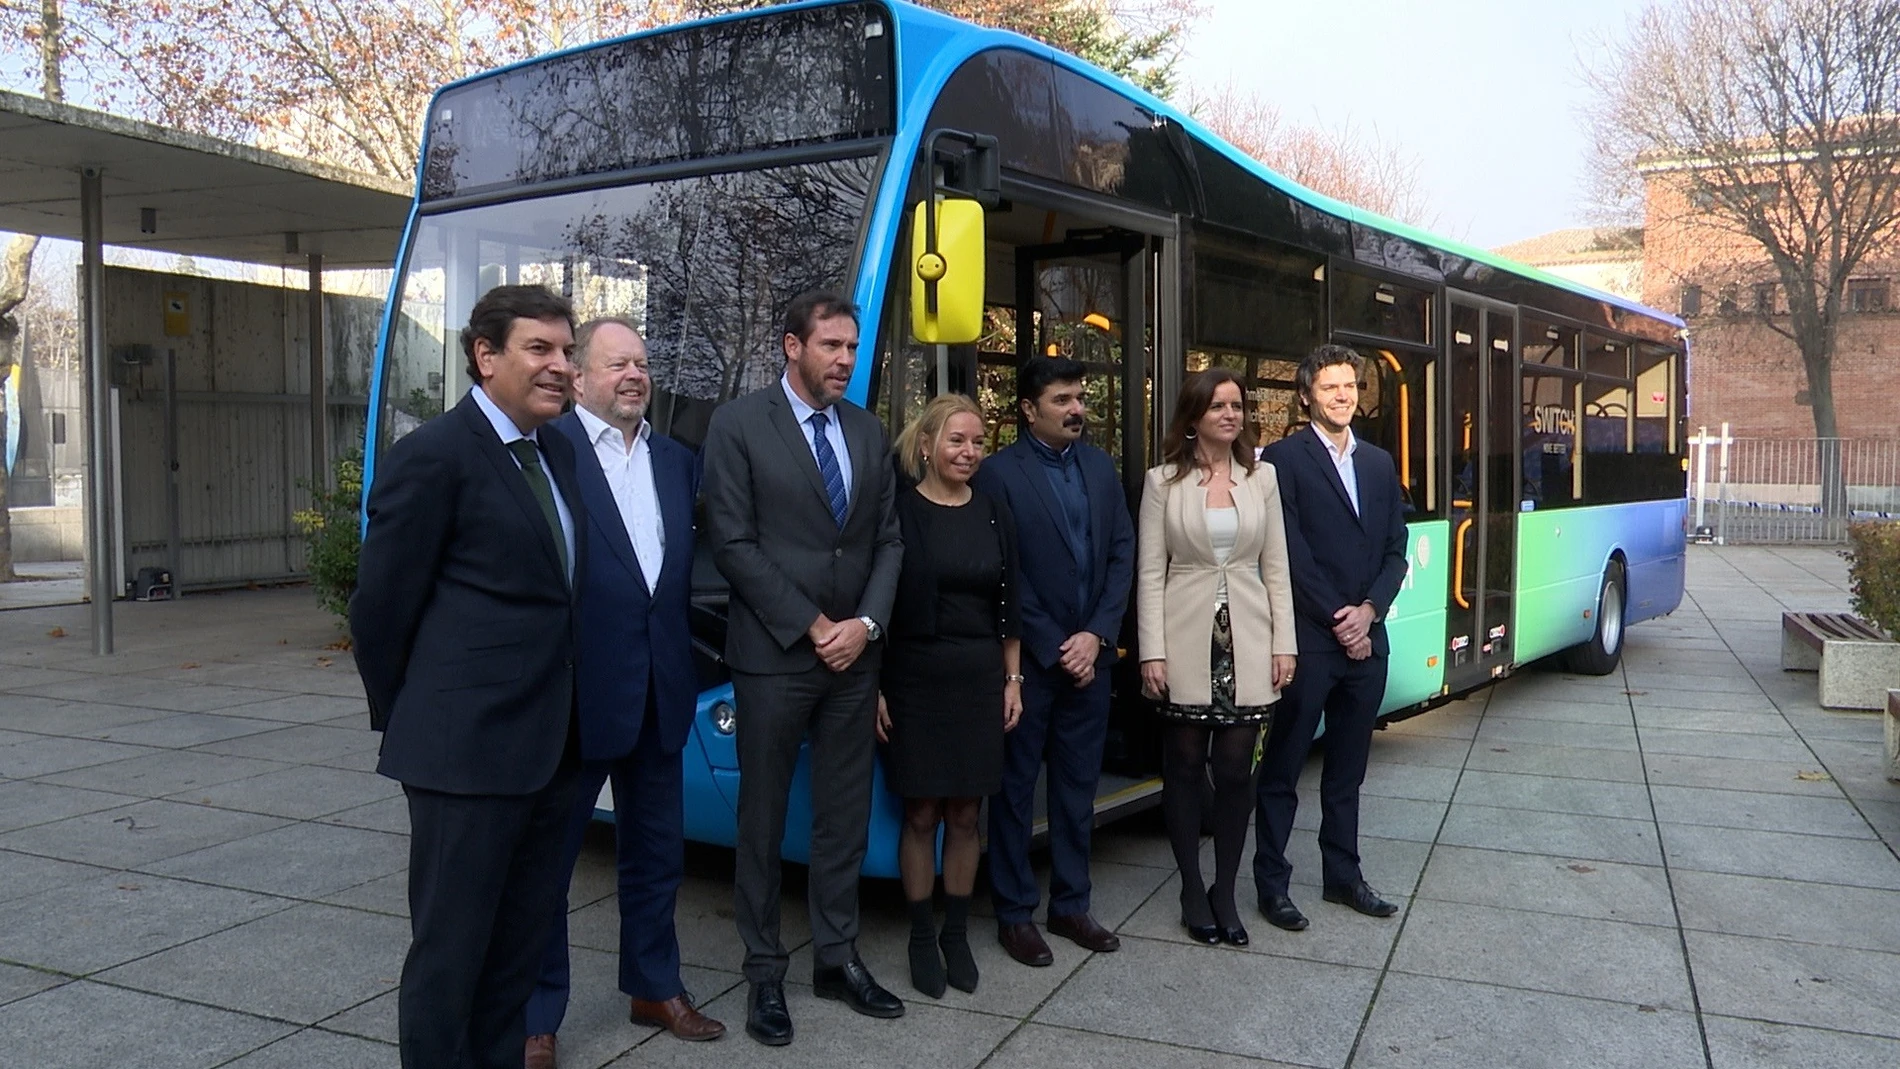 Directivos de Switch Mobility junto a las autoridades asistentes a la presentación del proyecto de fábrica de autobuses en Valladolid.EUROPA PRESS15/12/2021